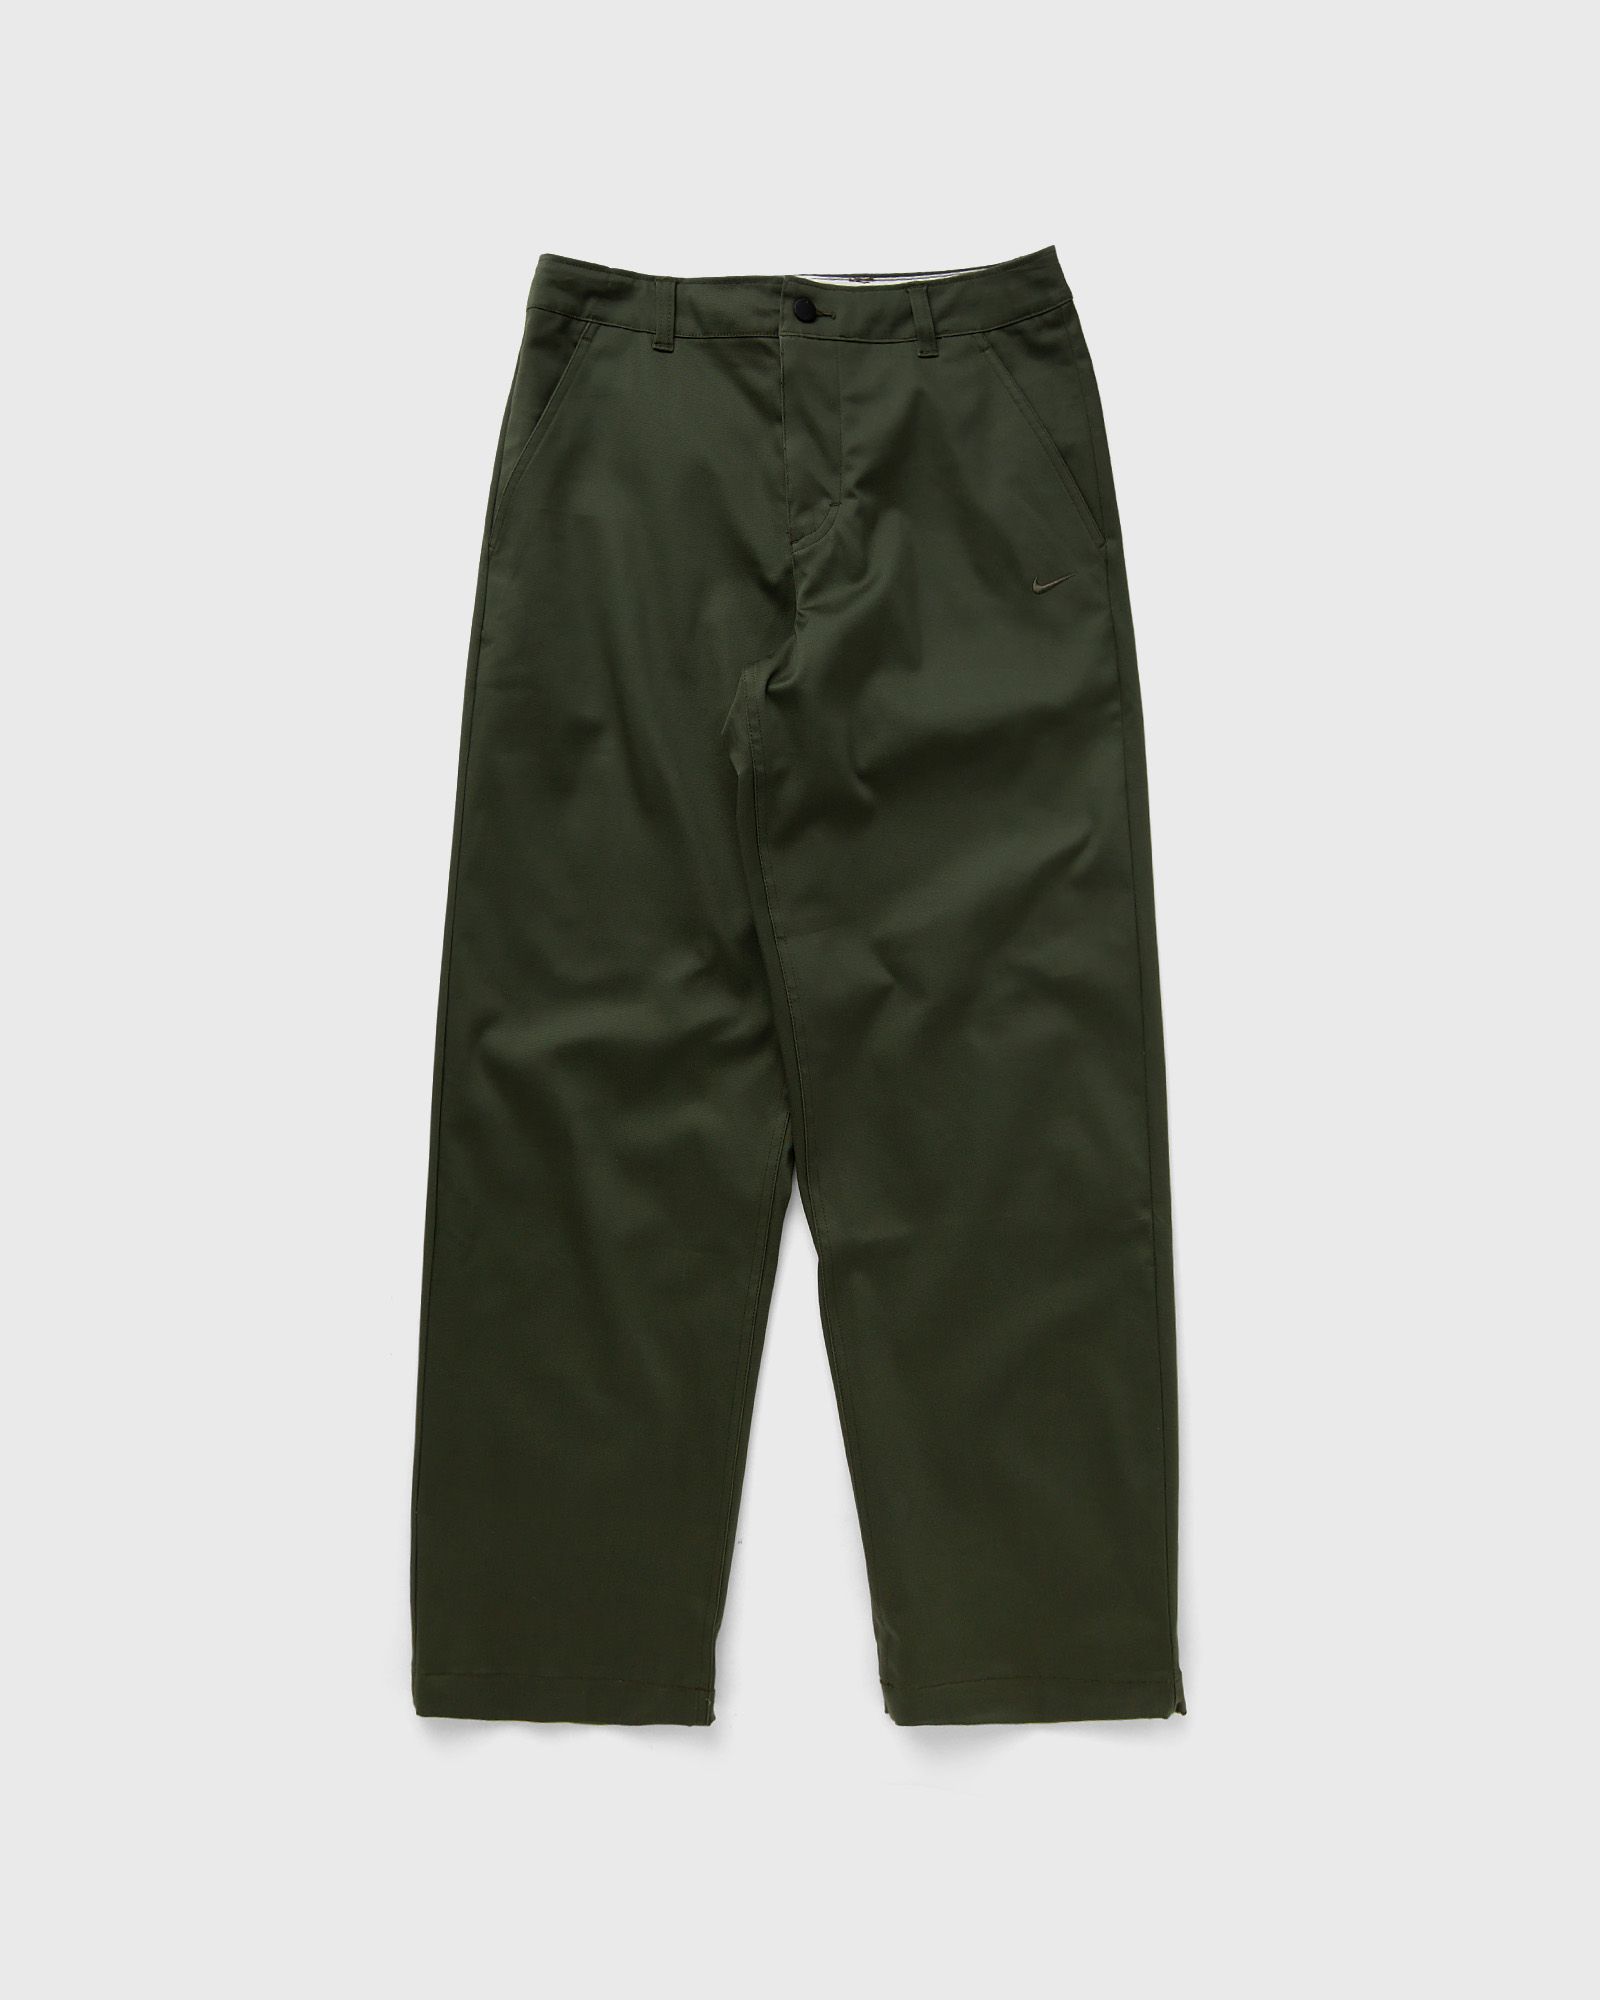 Nike - el chino pants men casual pants green in größe:3xl